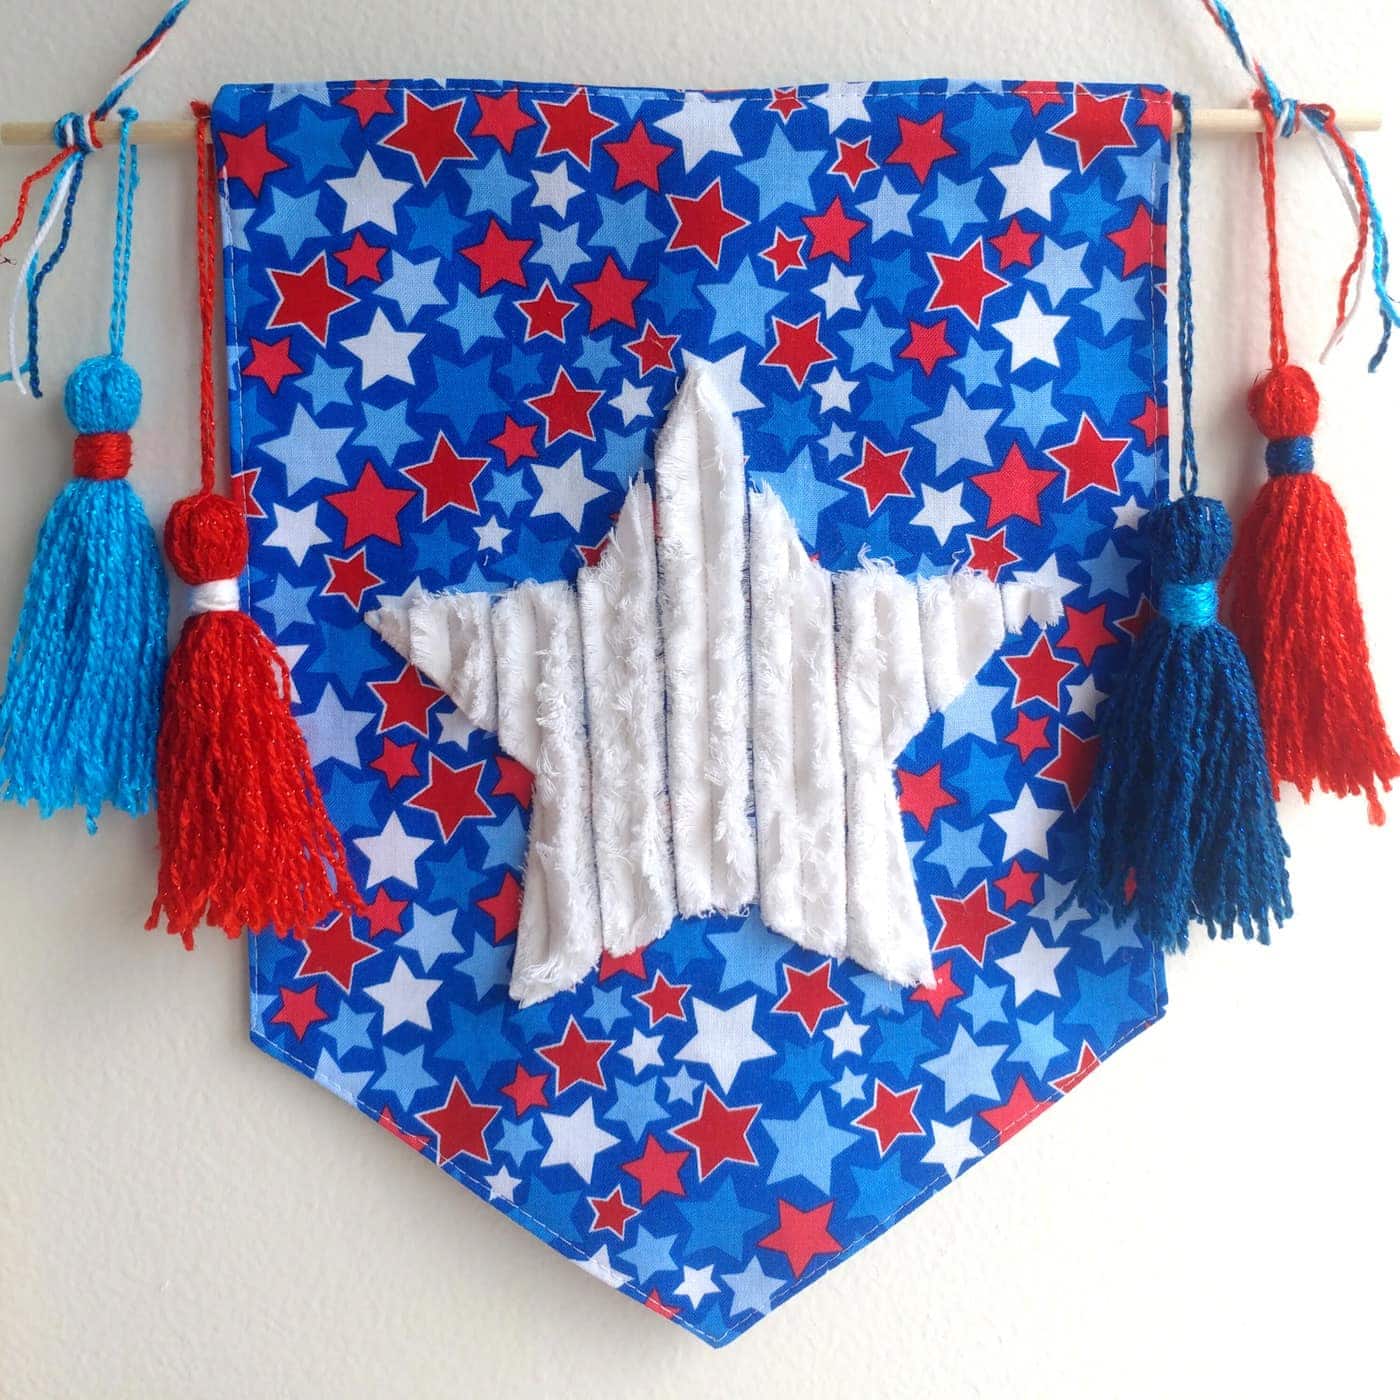 Le didacticiel de couture de bannière étoile chenille, une idée d'artisanat gratuite du 4 juillet, fait une décoration si mignonne du 4 juillet ! #4thofjuly #4thofjulycrafts #4thofjulysewing #smallsewingproject